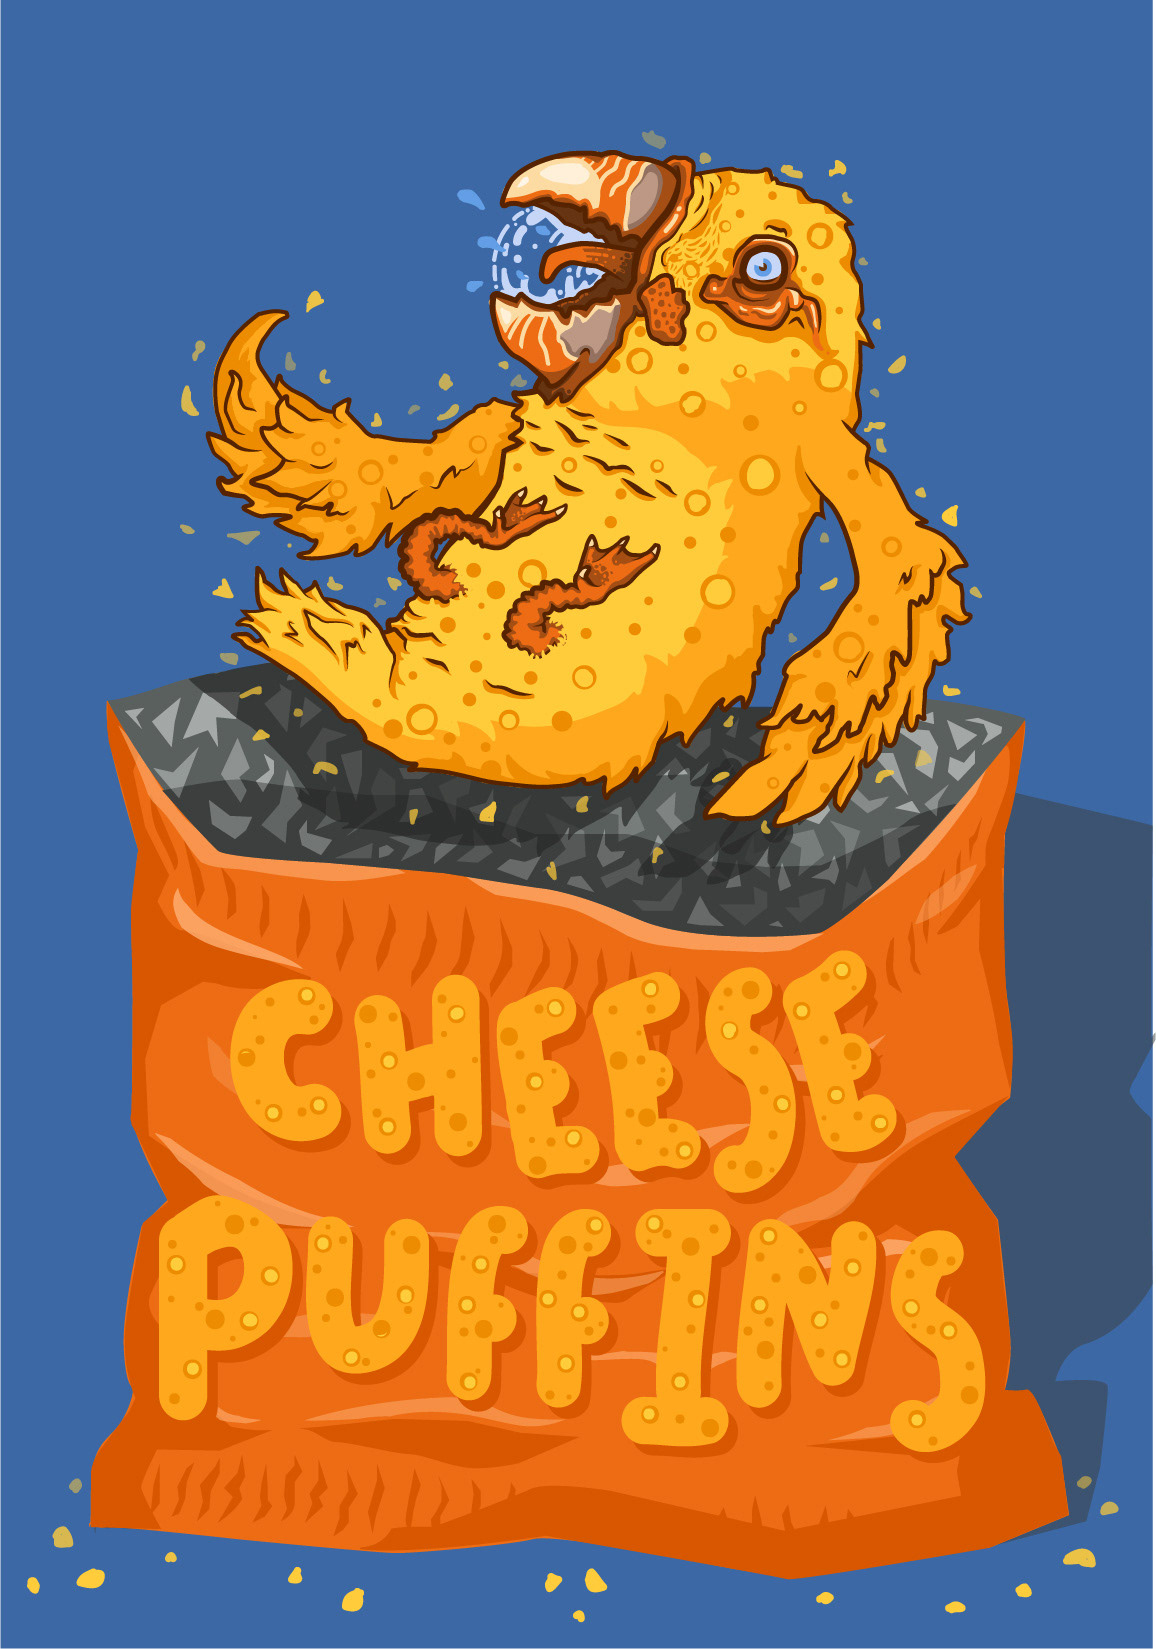 puffins CRISPS chips pun orange joke funny birds